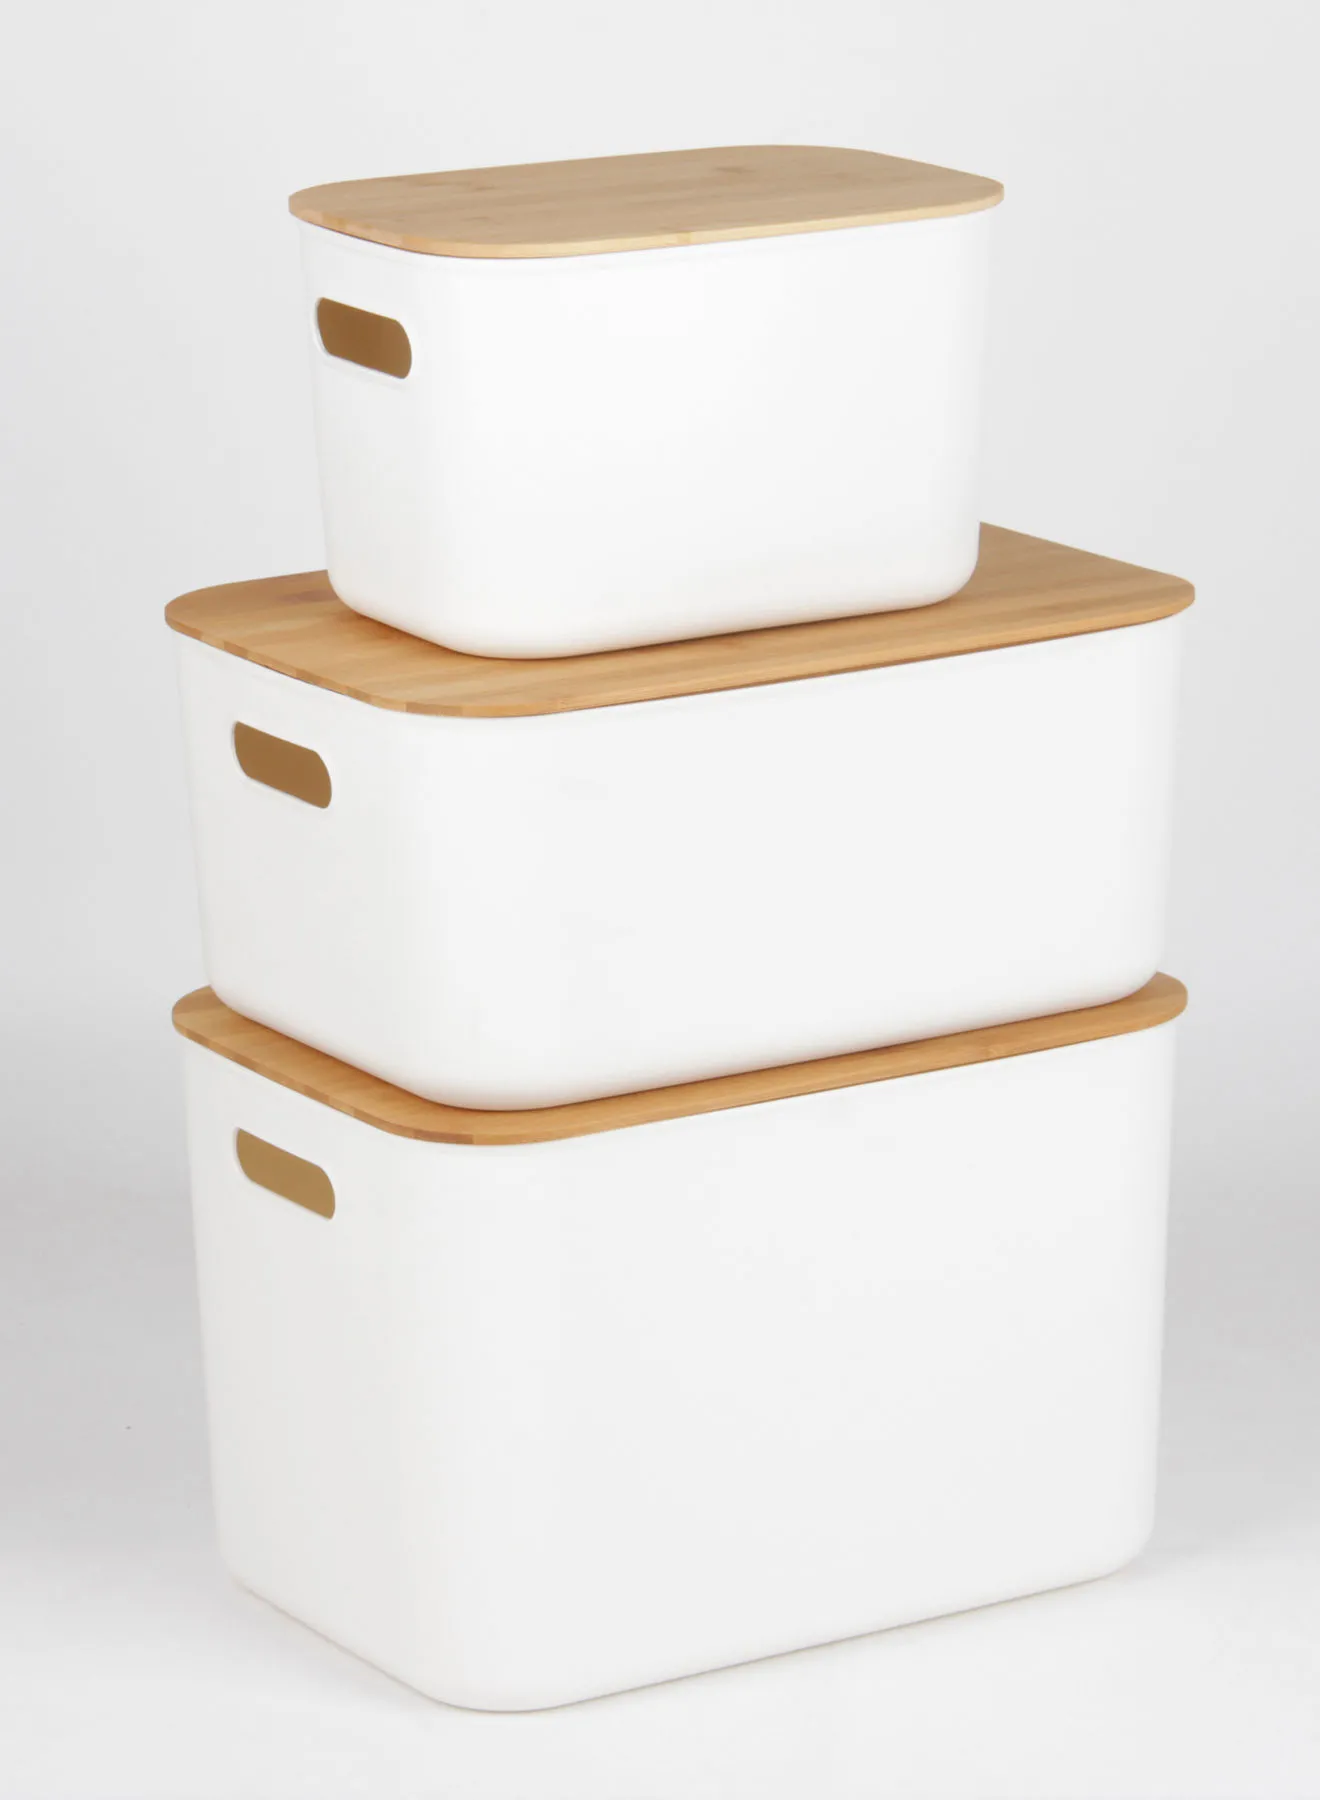 طقم صندوق تخزين من 3 قطع من أمل مع غطاء من الخيزران مناسب للاستخدام اليومي ، تخزين بسيط وصحي ومنظم TG51291MS3 أبيض / طبيعي 24 × 37 × 26 سم